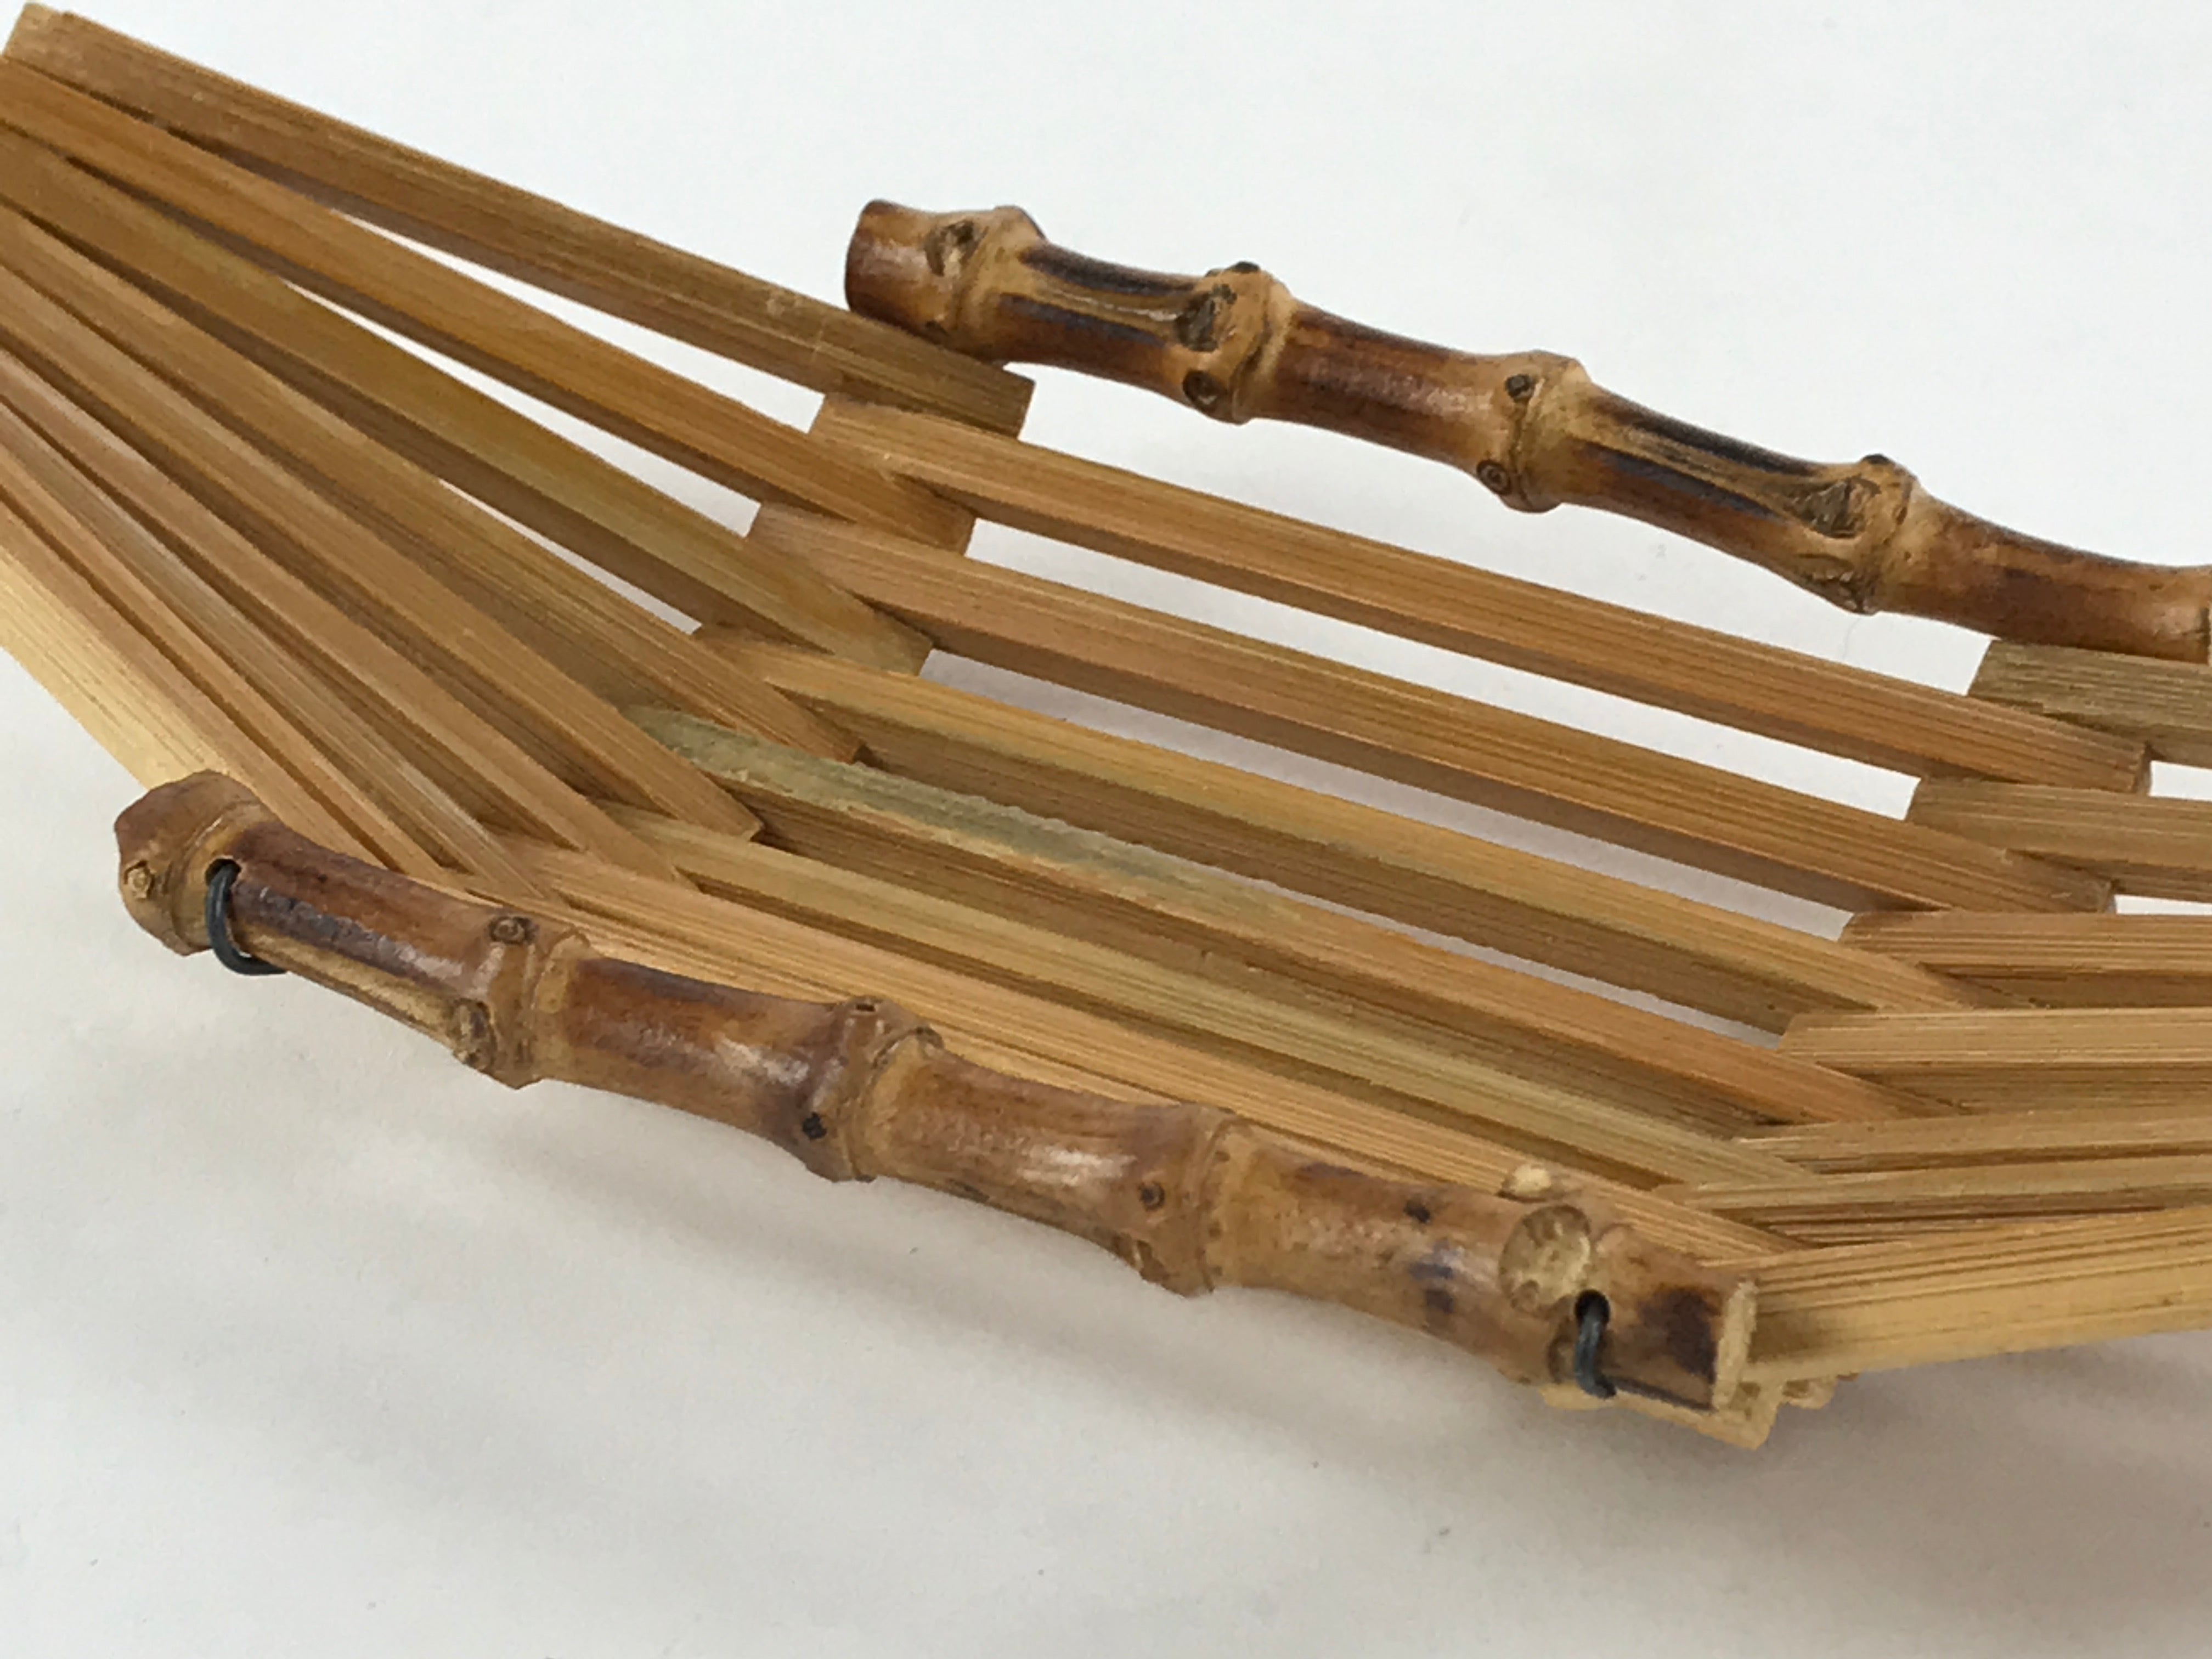 Japanese Bamboo Craft Oshibori-Oki Wet Towel Tray Vtg 3pc Hand Wipe Holder UR998